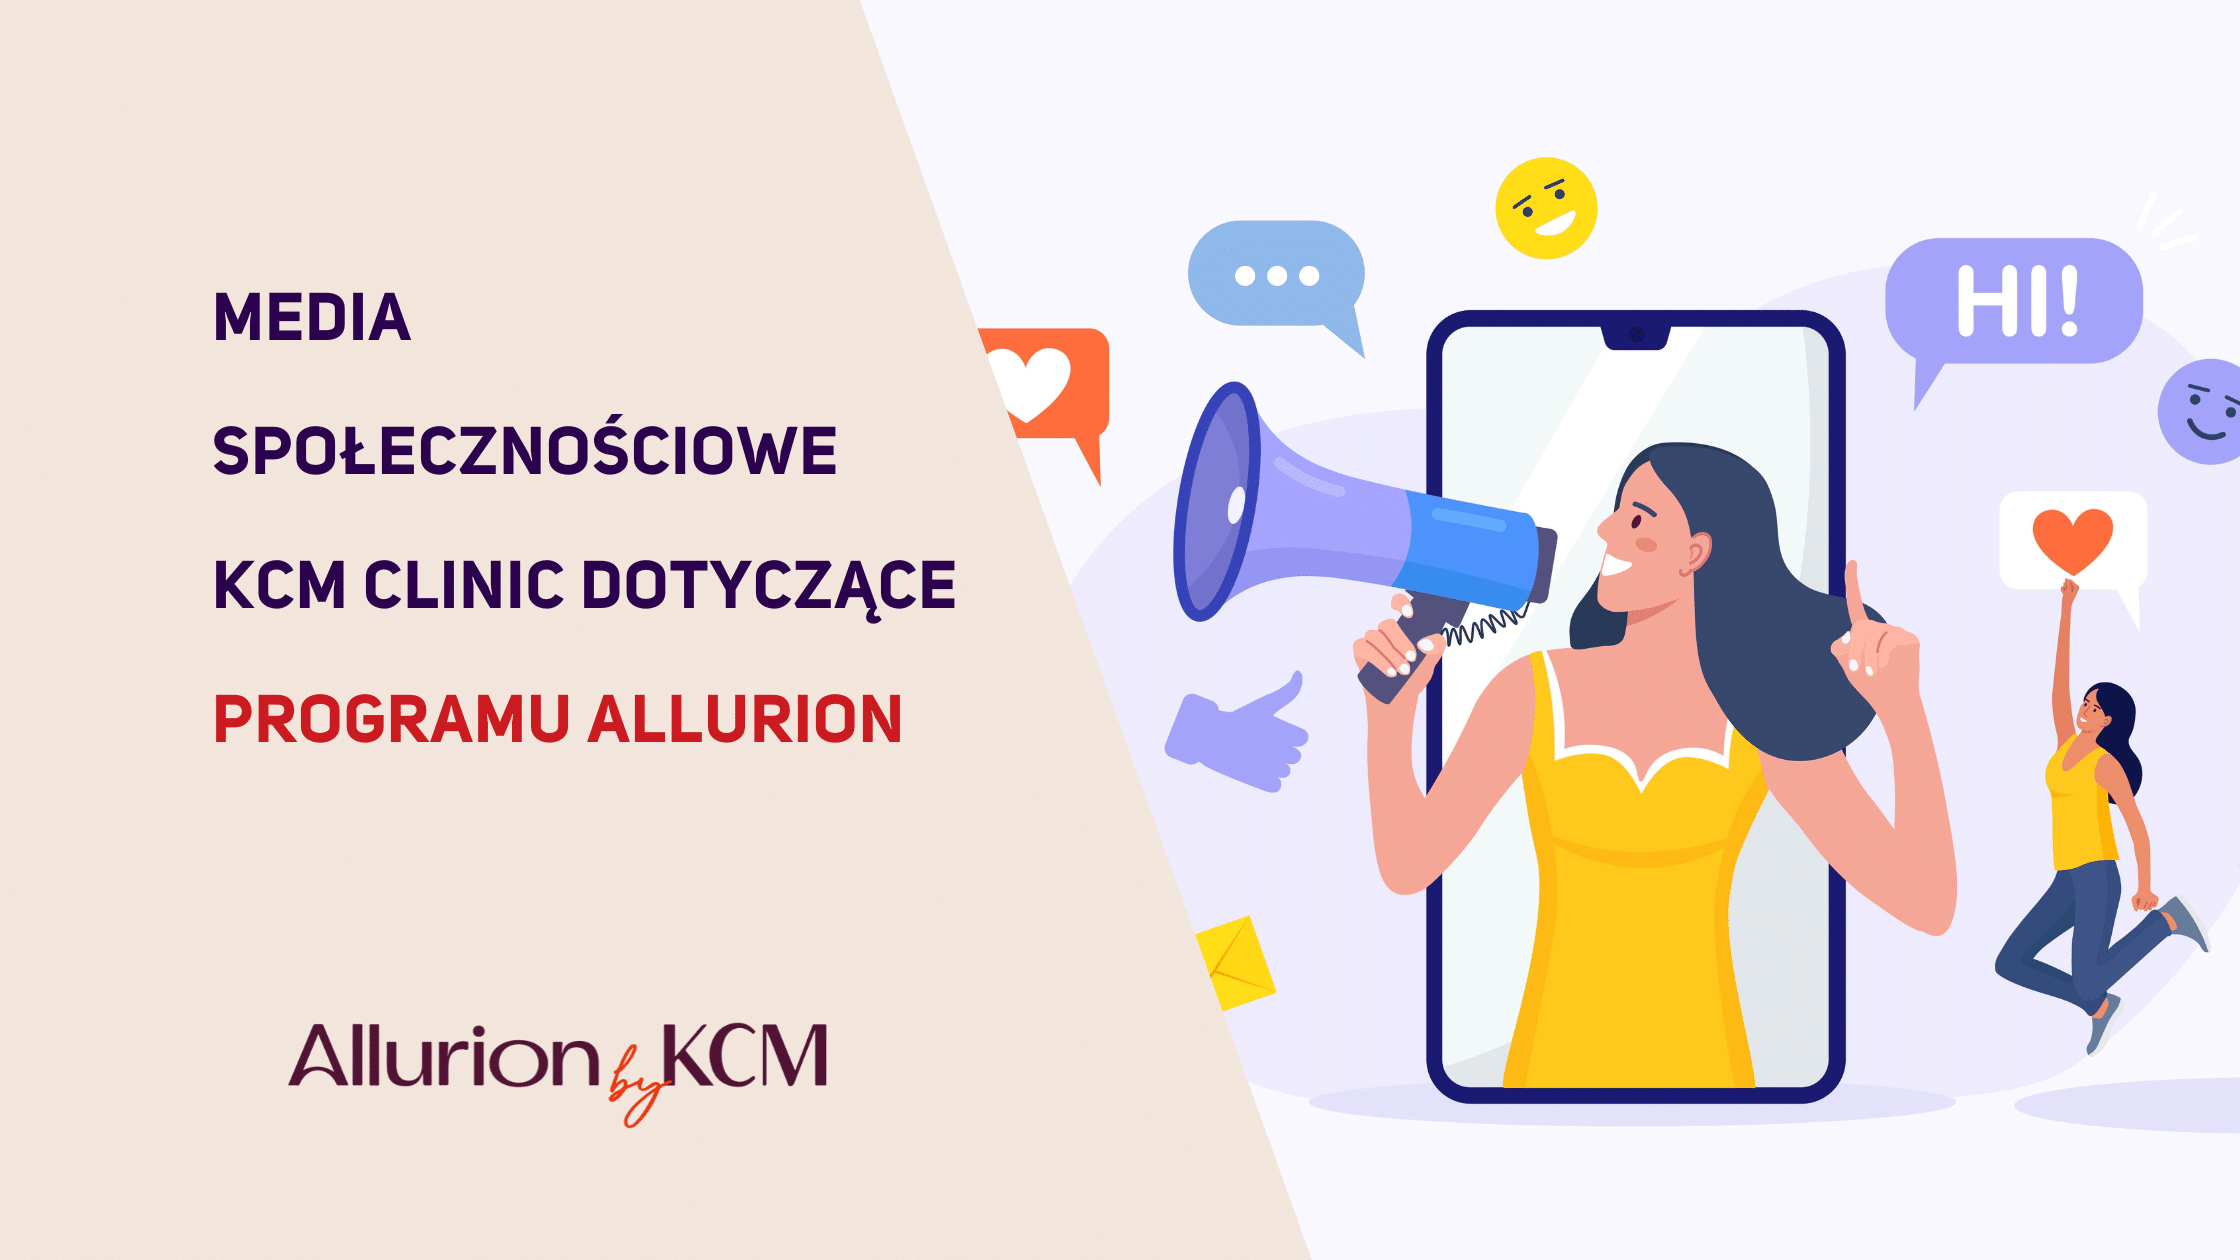 Interaktywny Przewodnik po Programie Allurion by KCM i Balonie Allurion: Na Żywo na Różnych Platformach w Mediach Społecznościowych